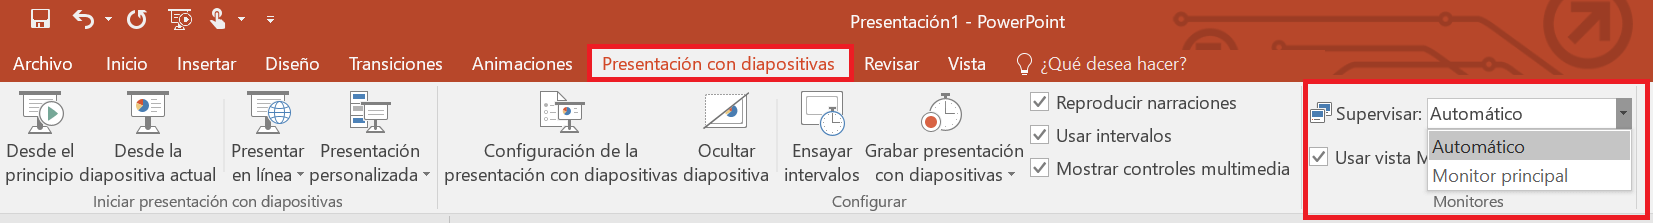 Seleccionar la pantalla de presentación de PowerPoint